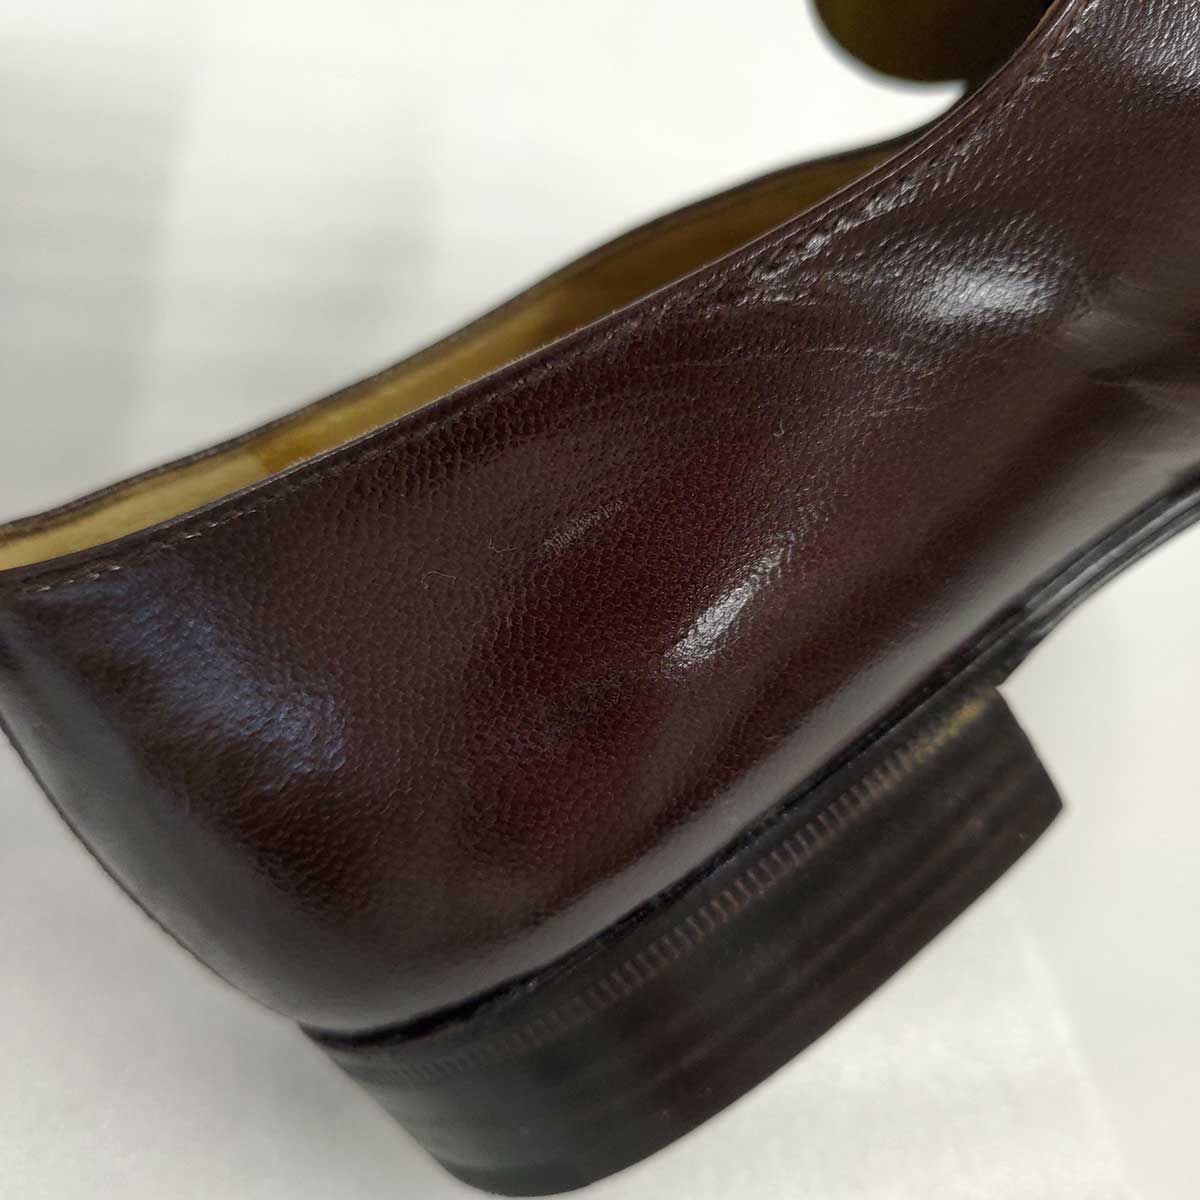 MORESCHI ローファー クロコダイル シューズ イタリア製 ドレスシューズ 革靴 6.5(24.5cm)ブラウン 20411 メンズ モレスキー